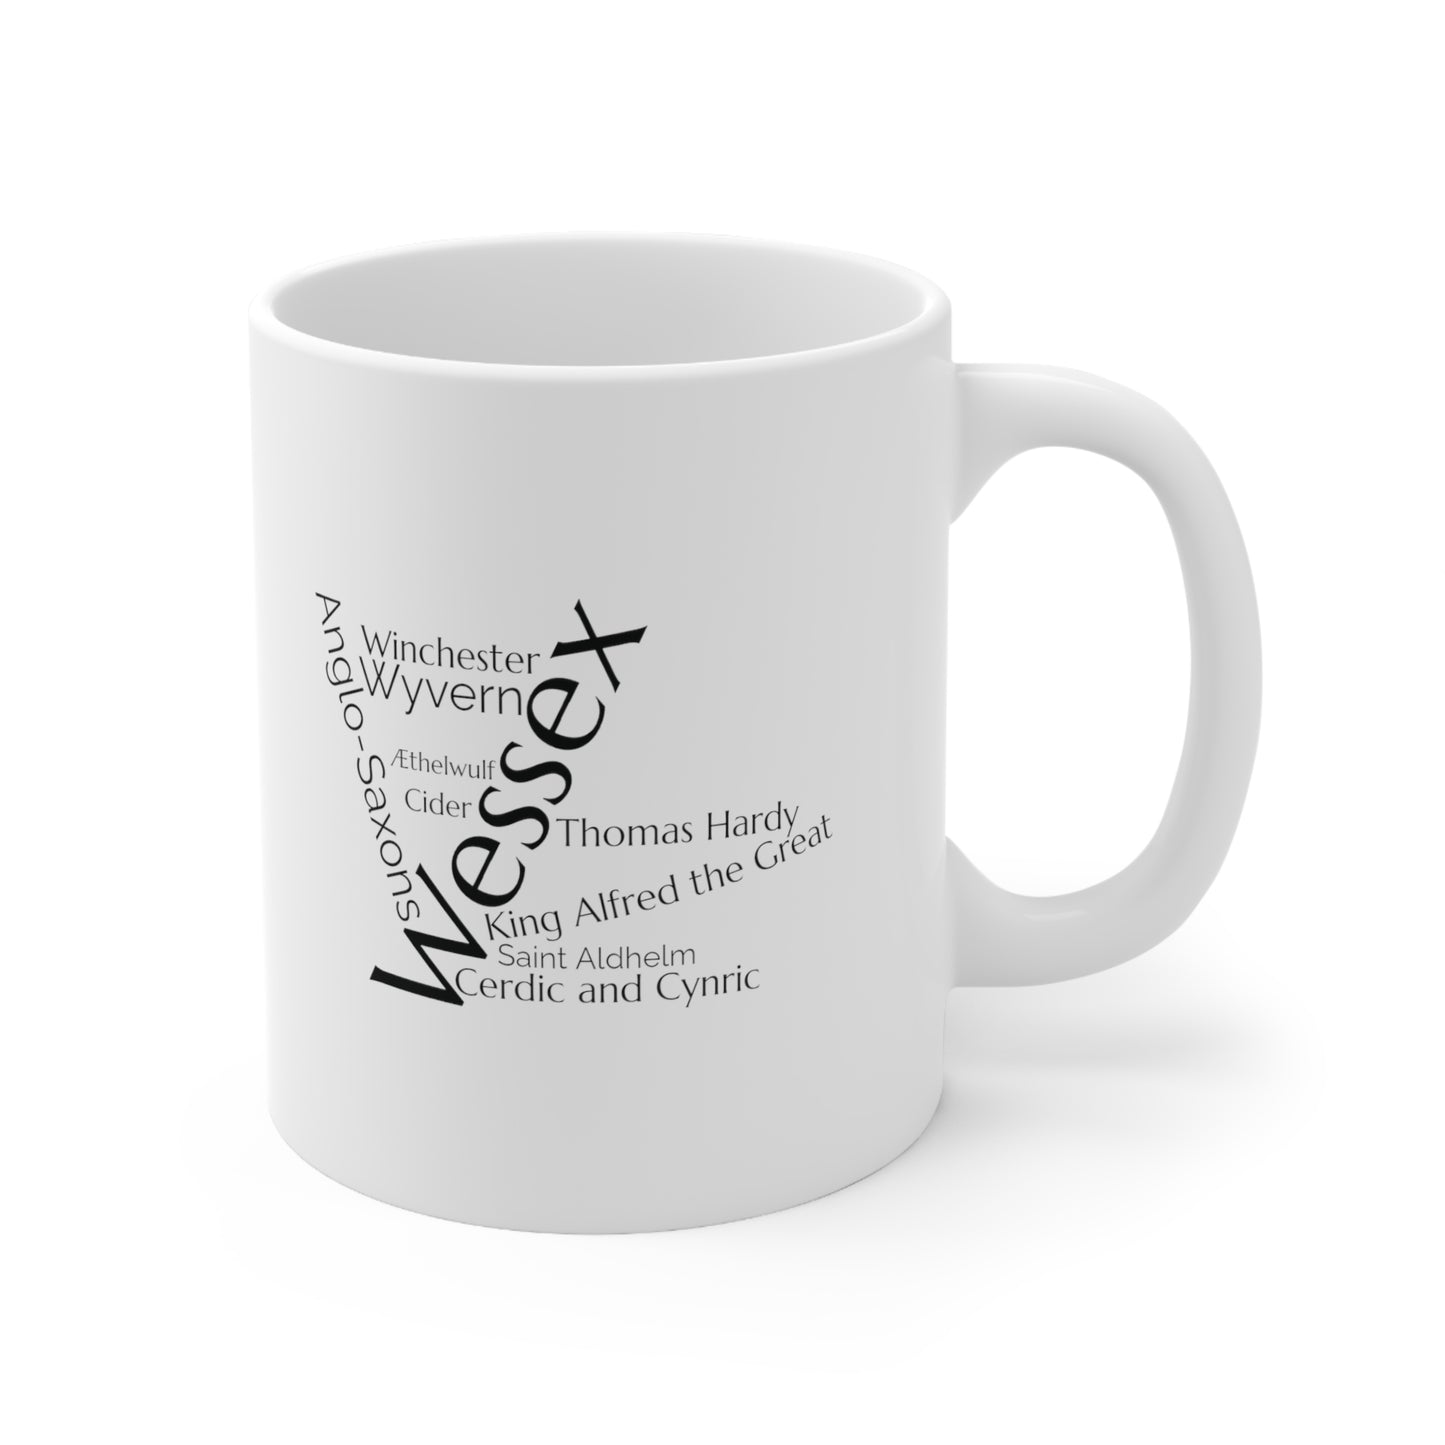 Wessex word mug, local mug, geography mug, gift, mug, coffee cup, word mug, wordcloud mug, christmas gift, birthday gift